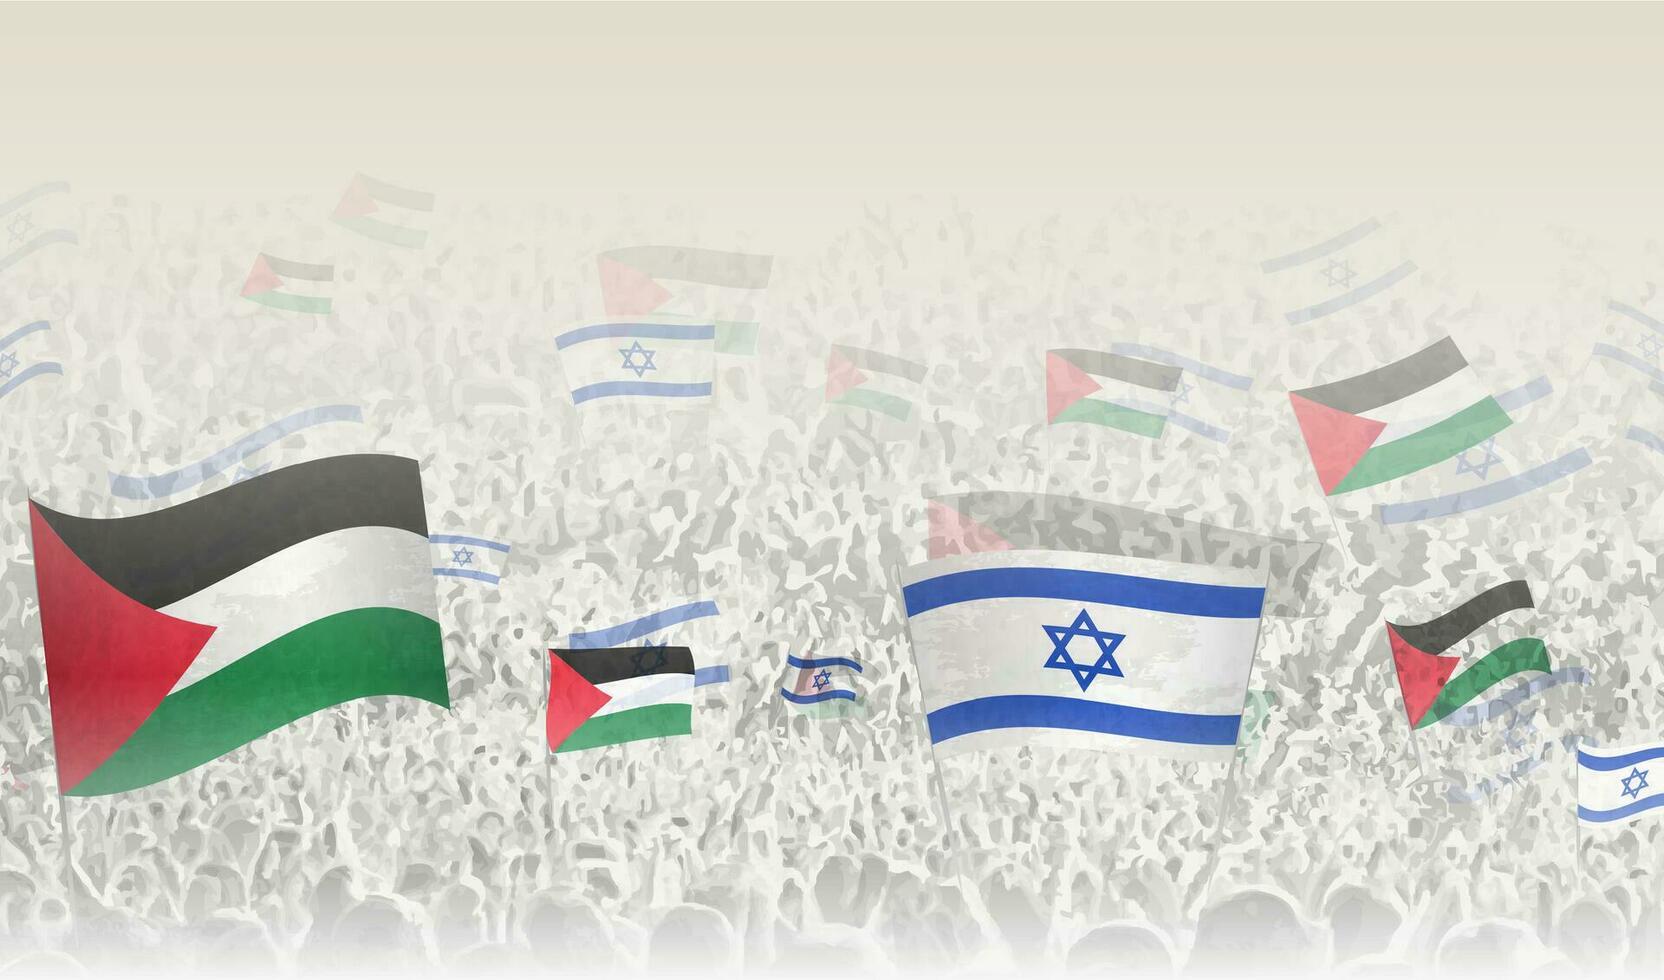 palestina och Israel flaggor i en folkmassan av glädjande människor. vektor